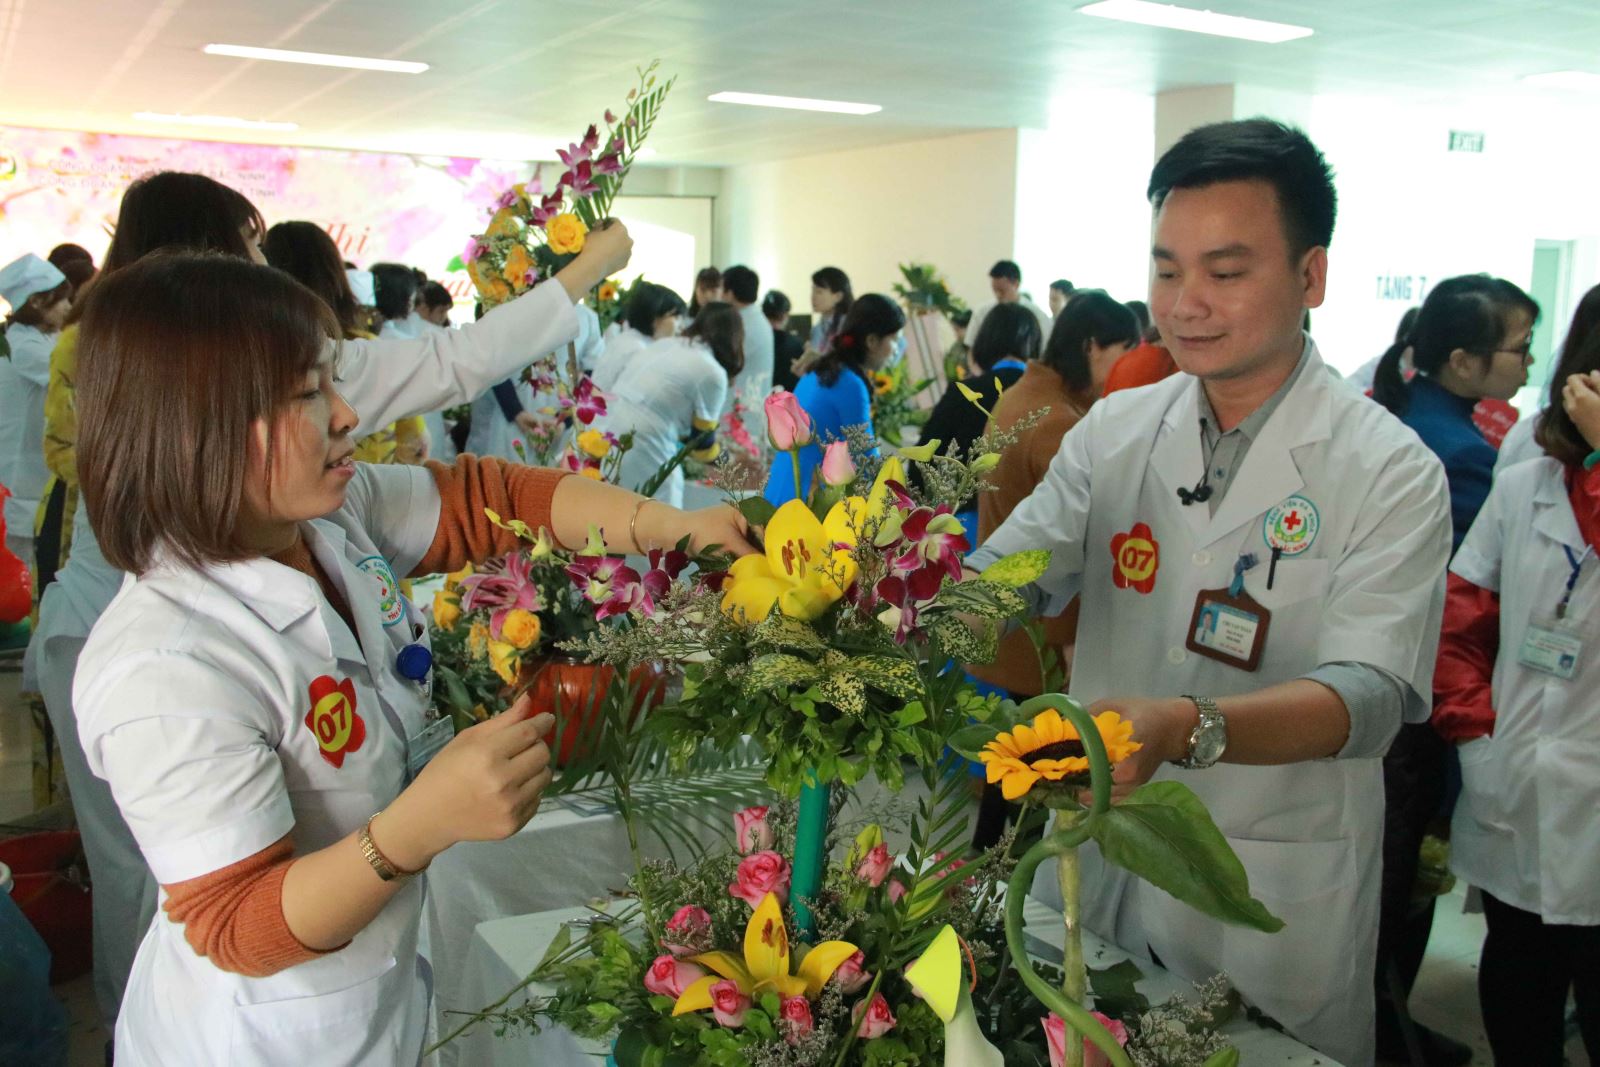  Công đoàn Bệnh viện đa khoa tỉnh Bắc Ninh tổ chức Hội thi cắm hoa nghệ thuật chào mừng 108 năm Ngày Quốc tế Phụ nữ và 1978 năm khởi nghĩa Hai Bà Trưng